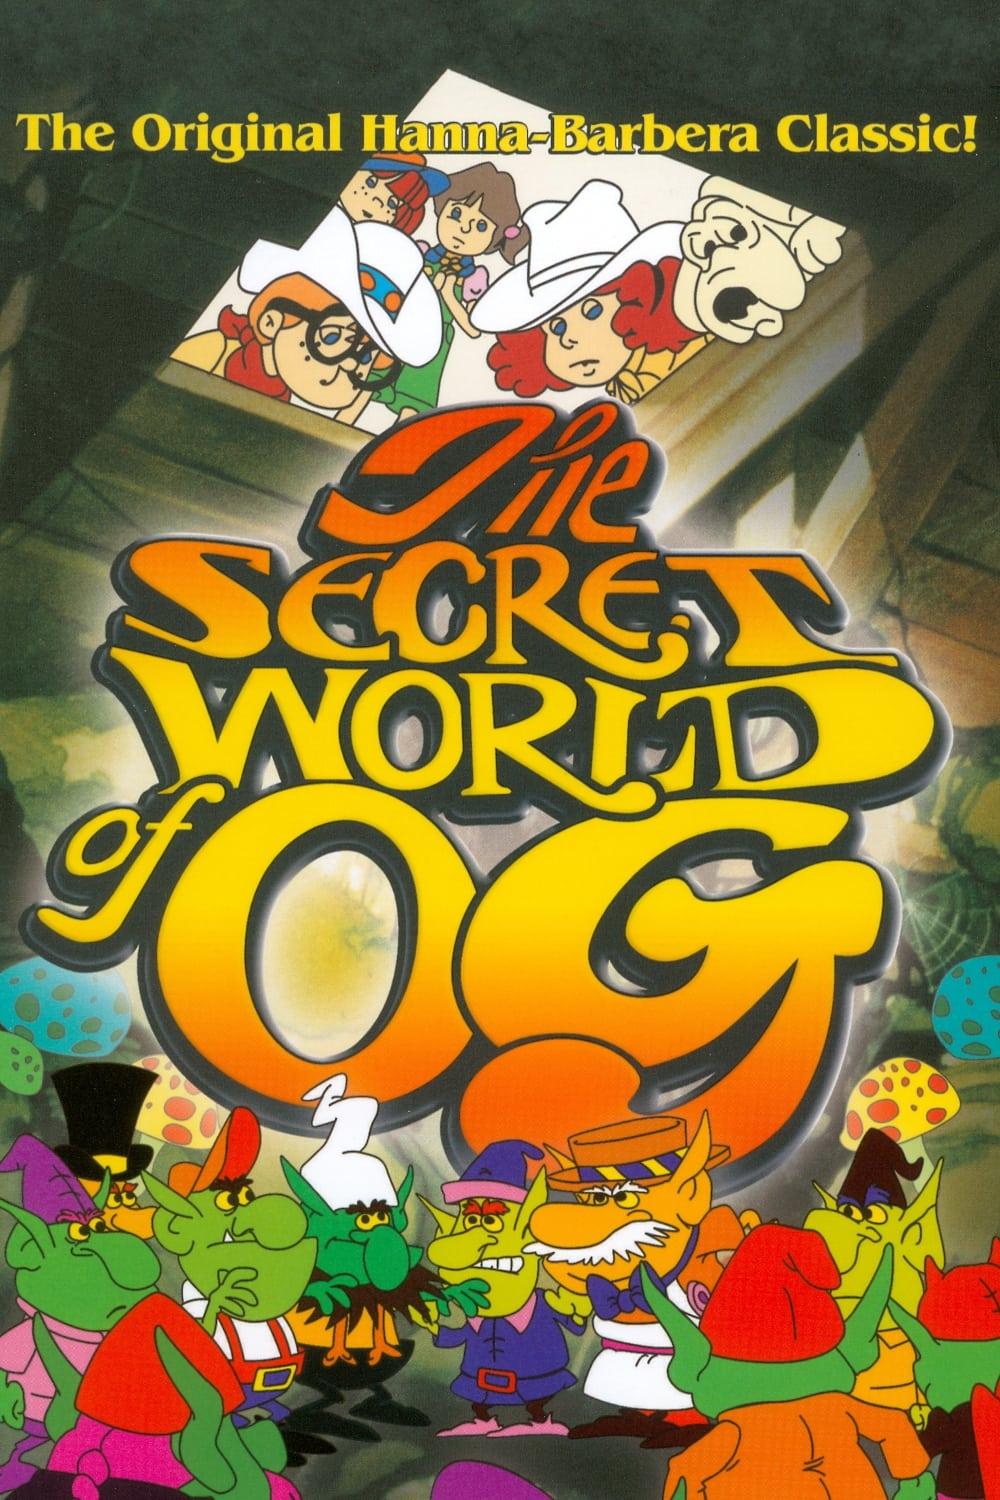 The Secret World of OG poster